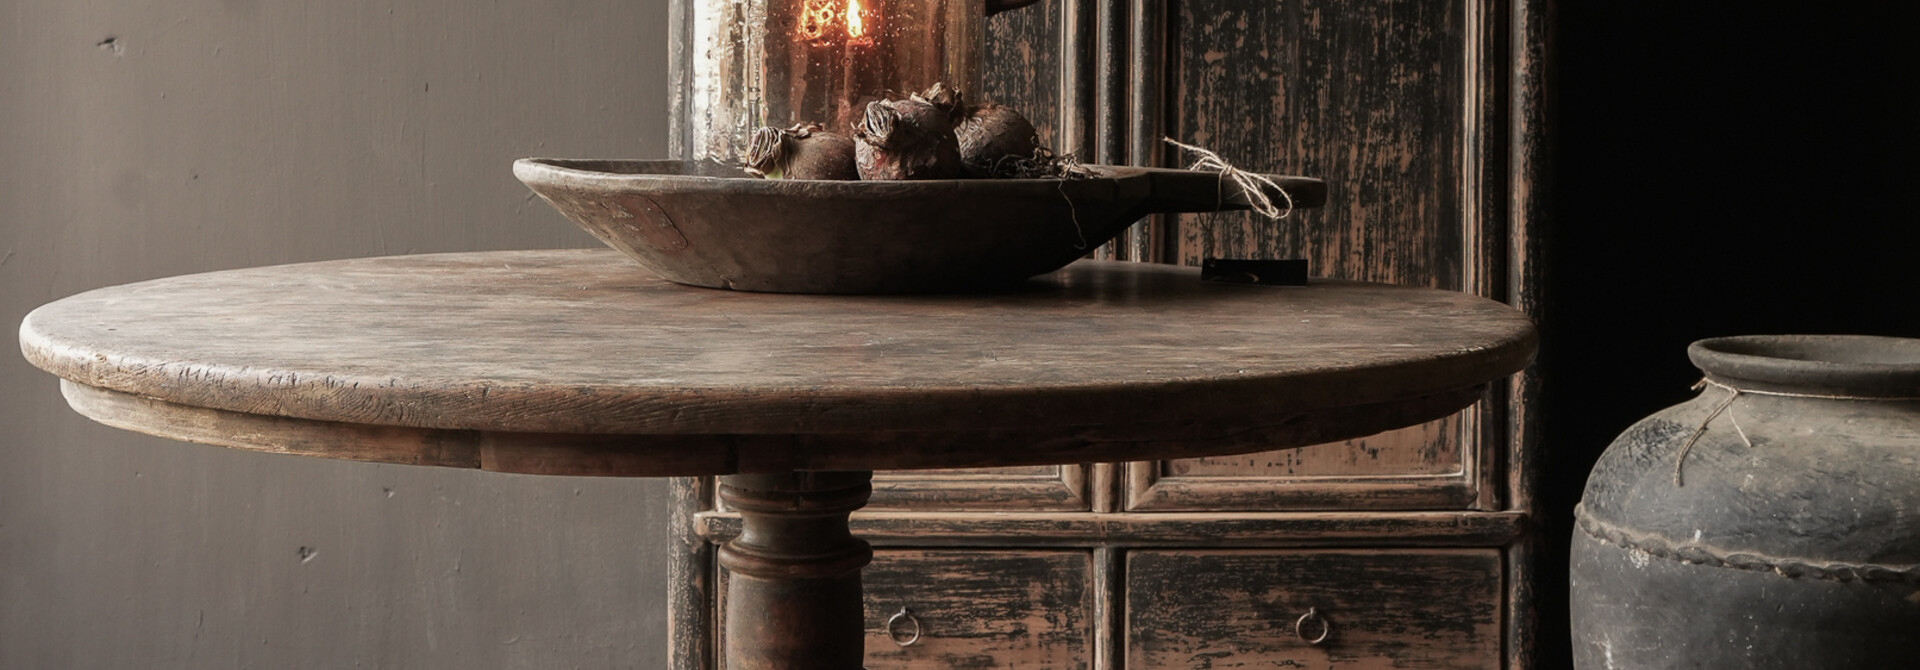 Schöner antiker runder Tisch aus Holz